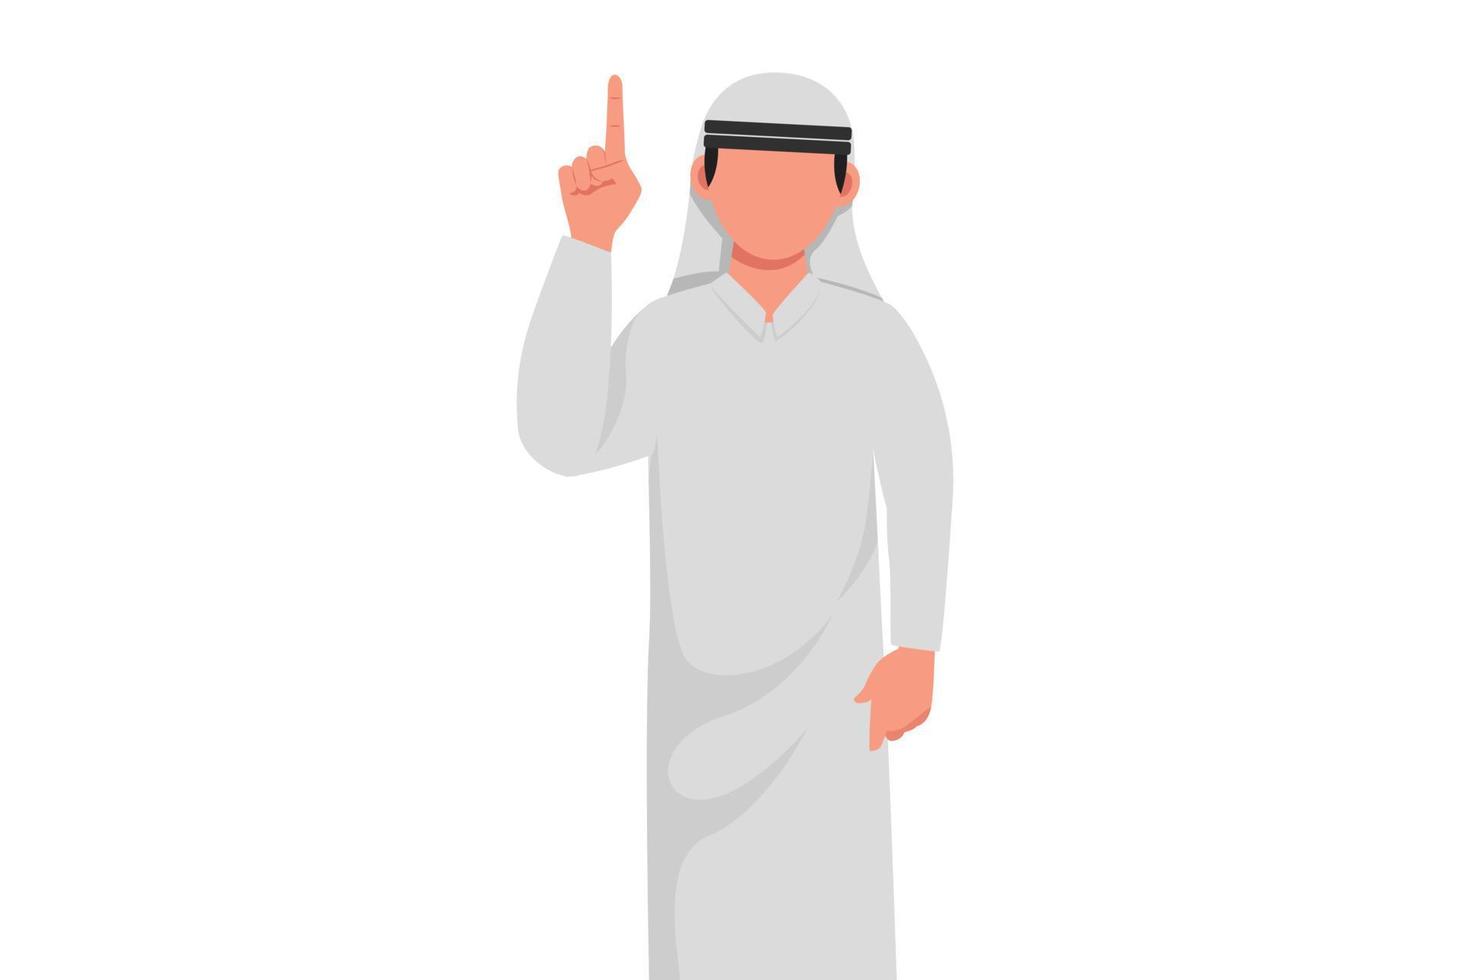 zakelijke platte tekening van jonge Arabische zakenman die vingersymbool omhoog wijst. mannelijke manager vinger wijsvinger omhoog gebaar. emotie en lichaamstaal. cartoon stijl tekenen grafisch ontwerp vectorillustratie vector